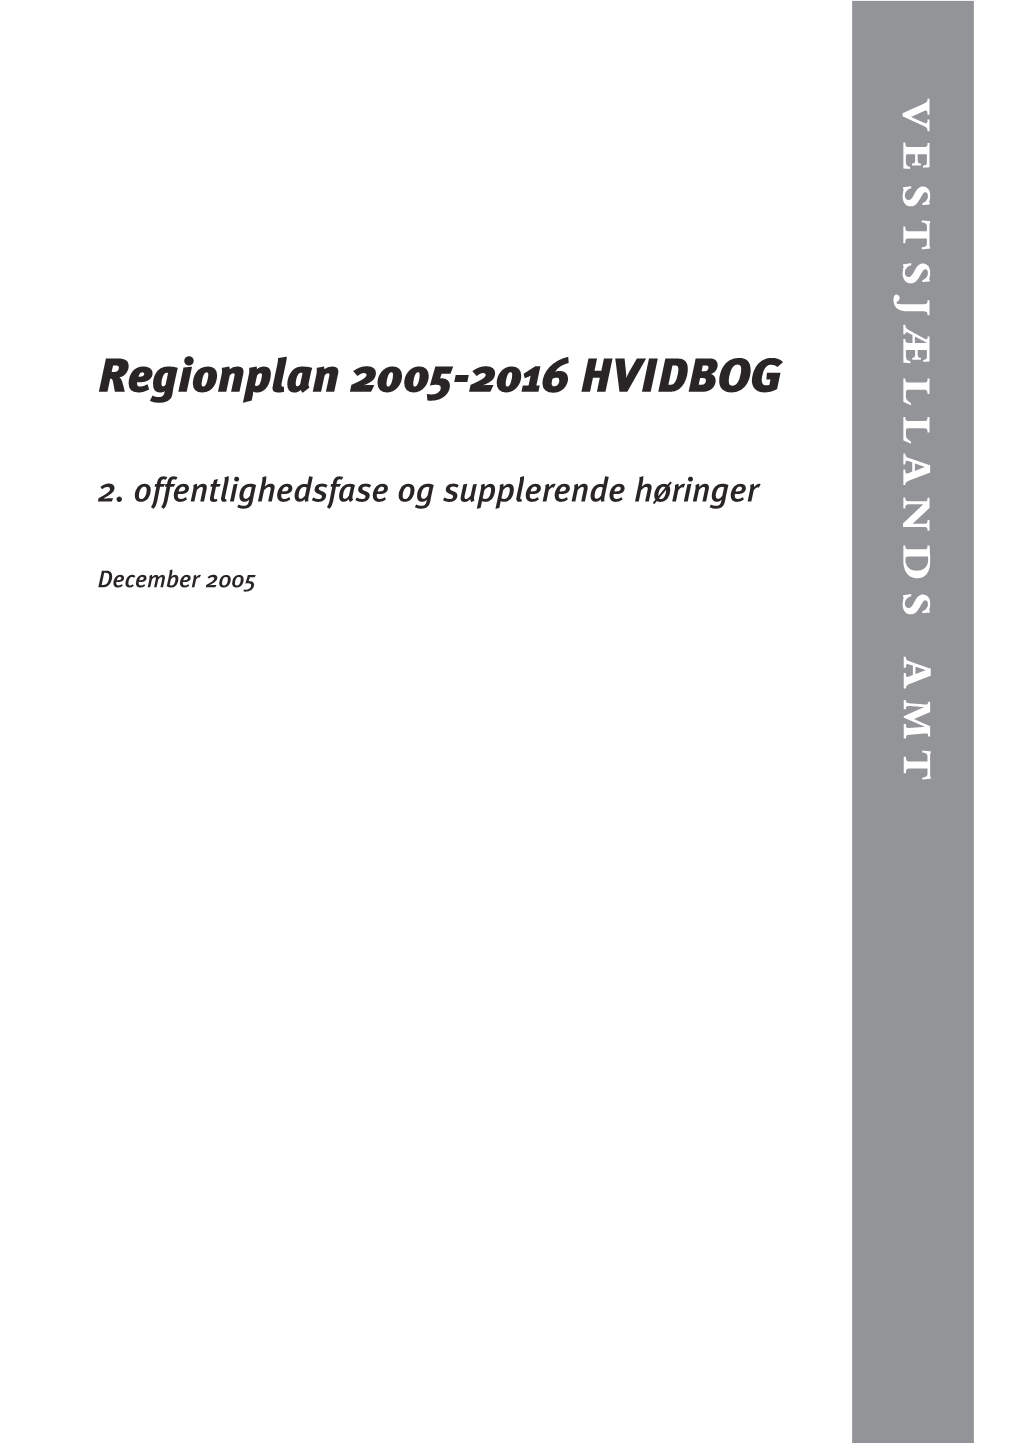 Regionplan 2005-2016 HVIDBOG